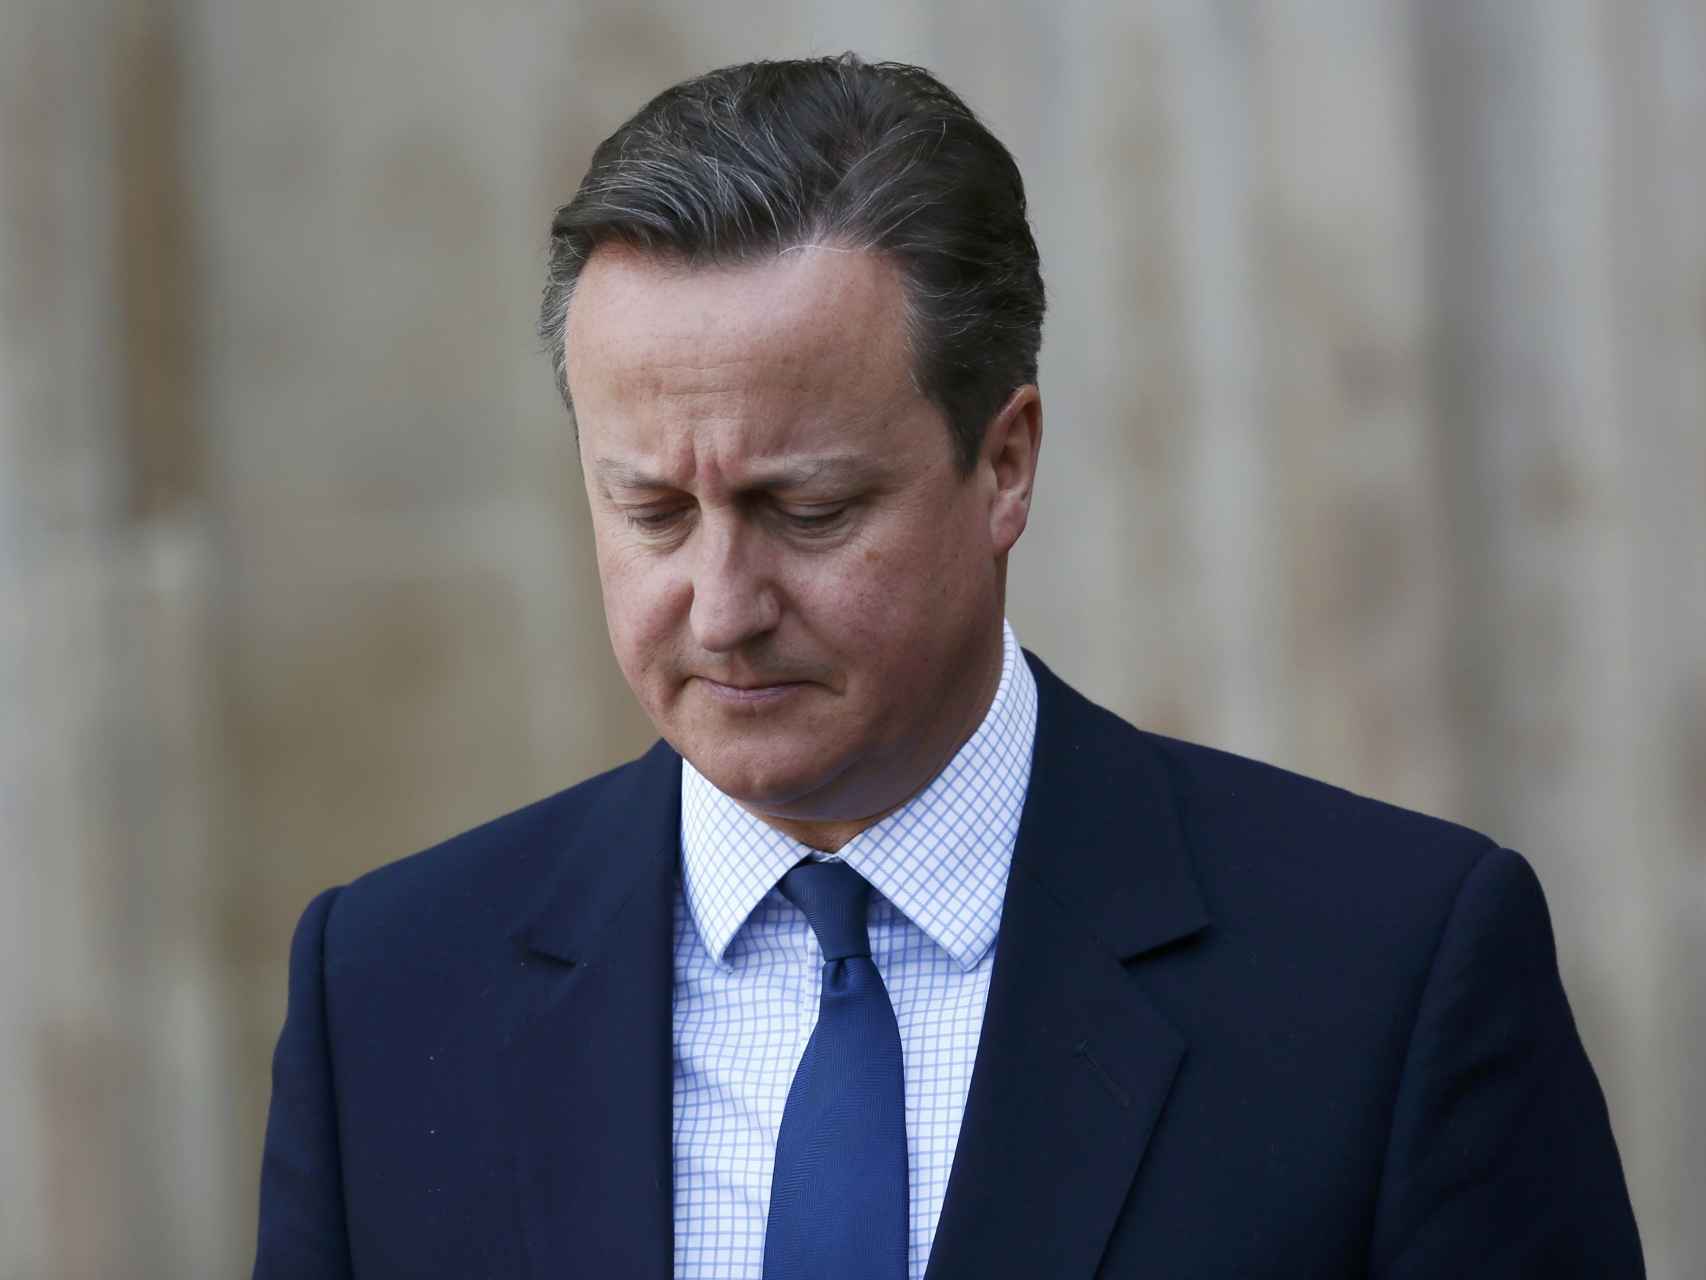 Cameron era la cara más visible de la campaña contra el brexit.